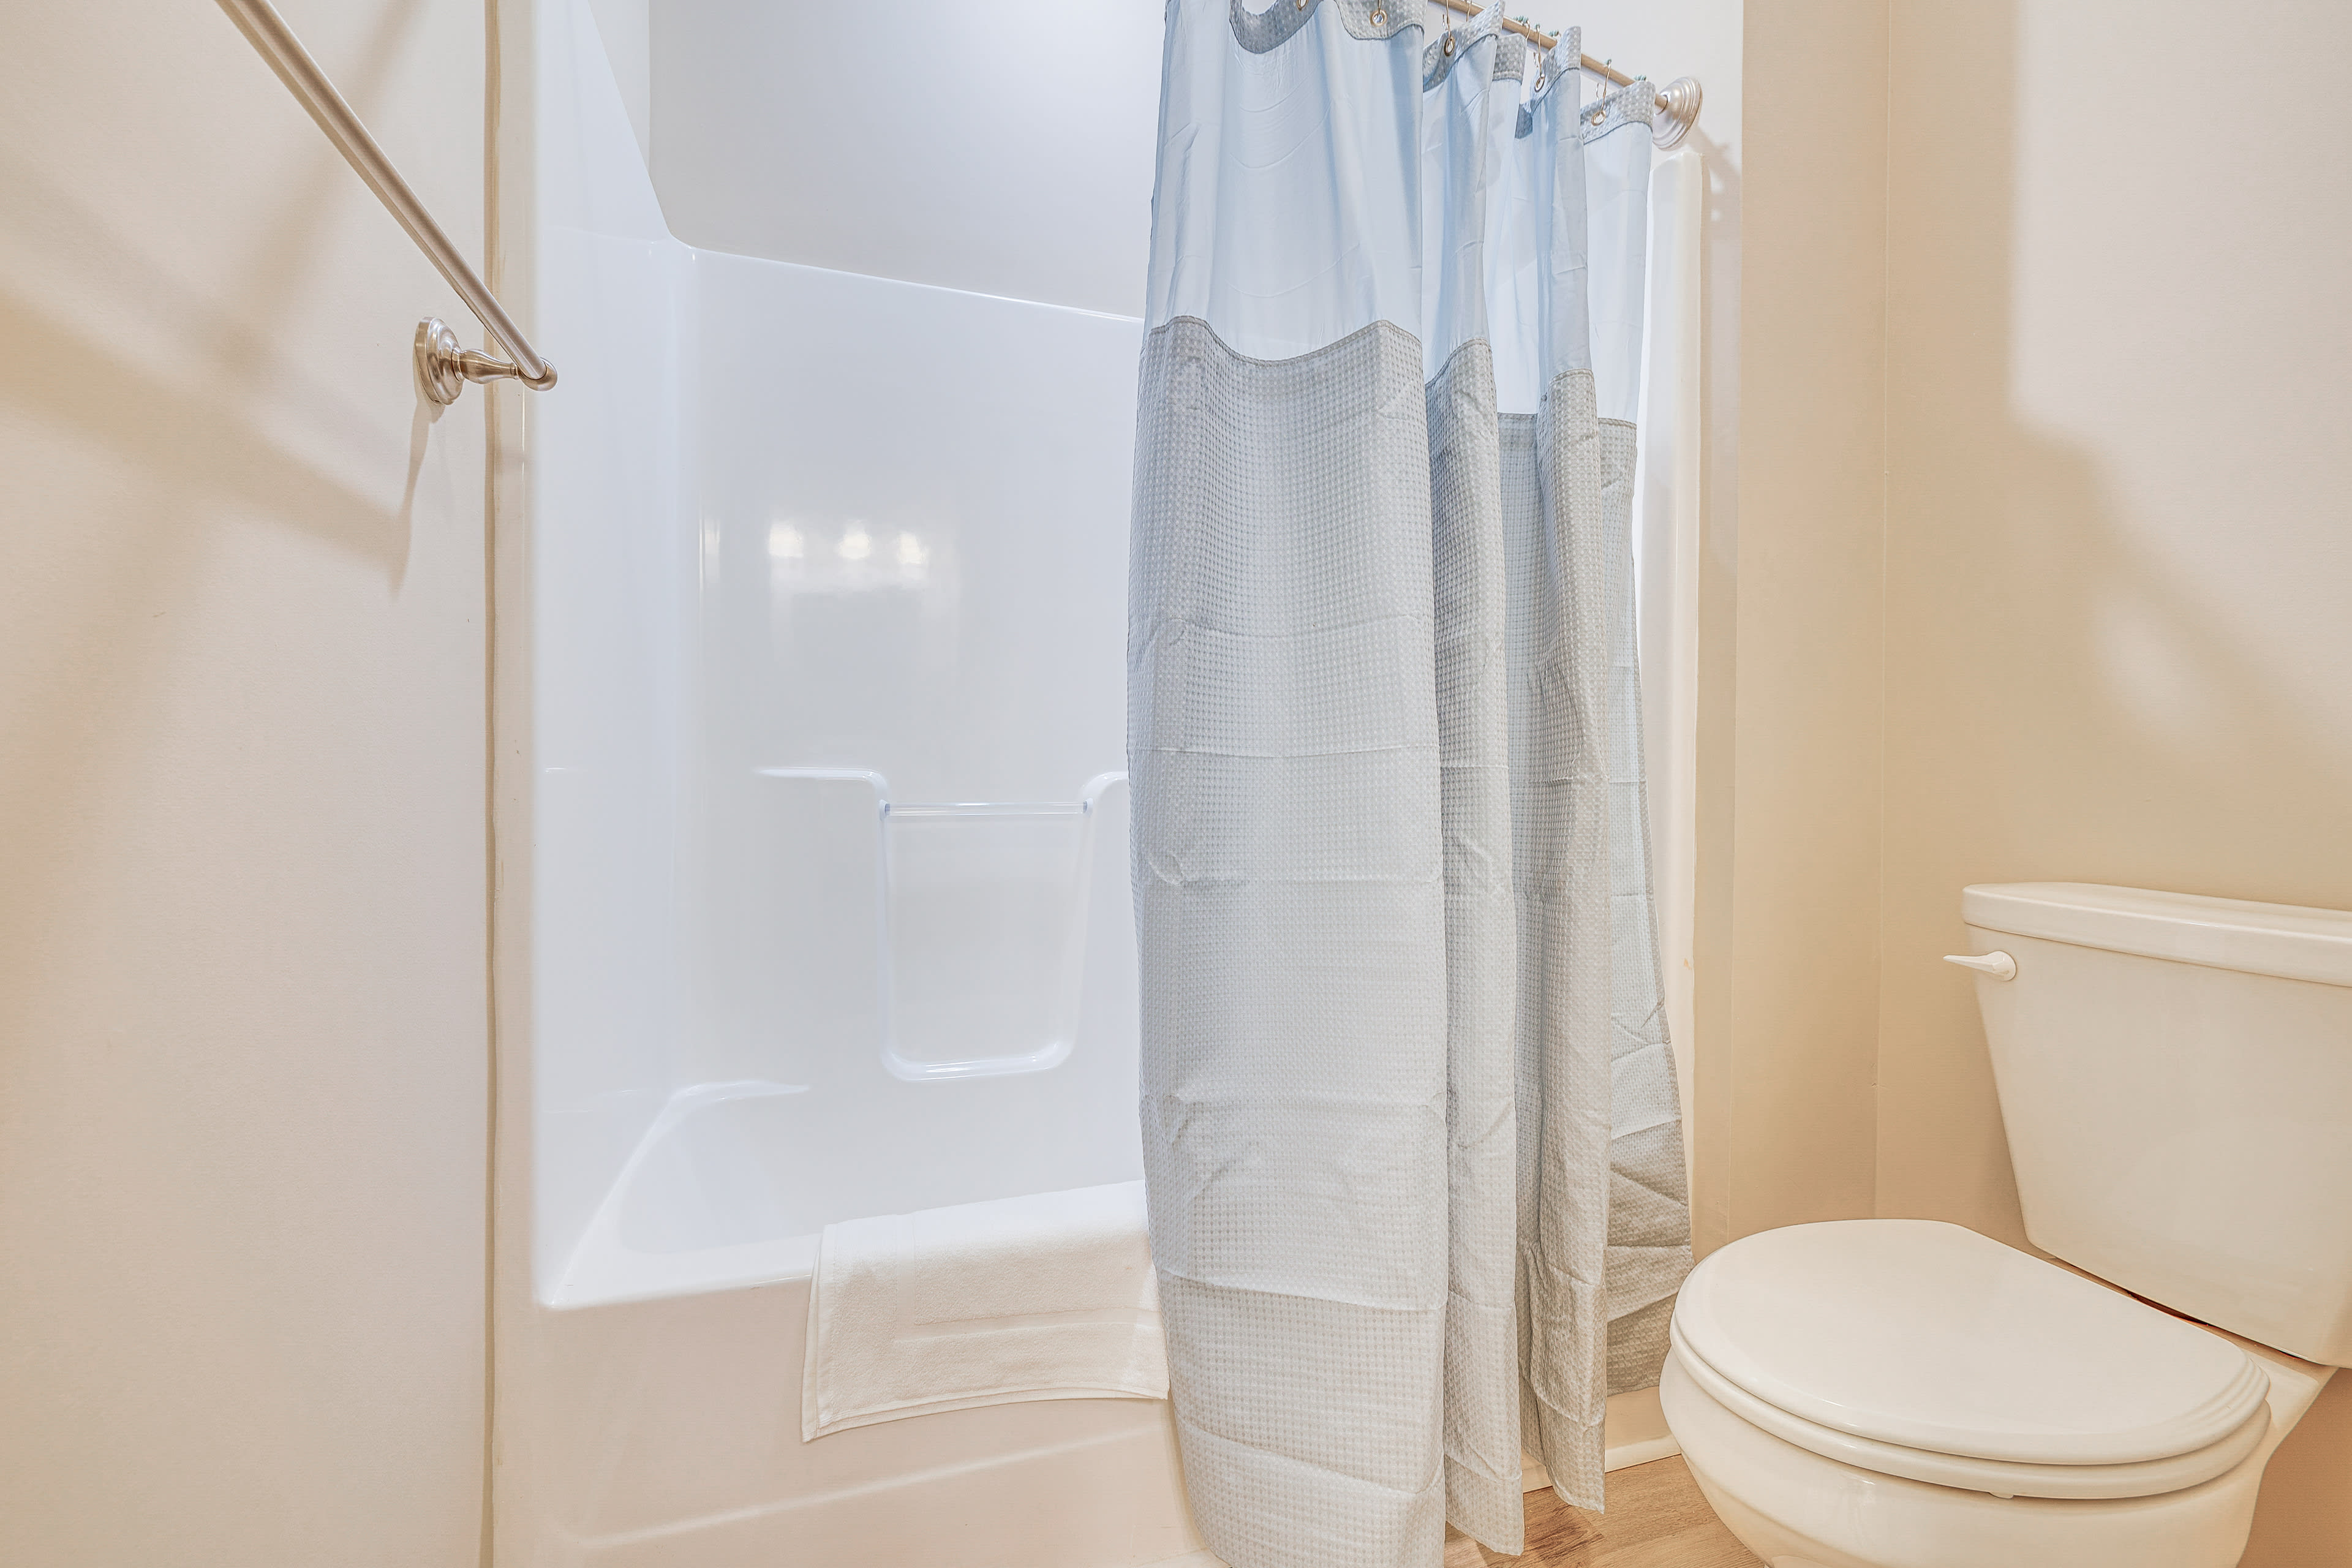 Full Bathroom | 2nd Floor | Shower/Tub Combo